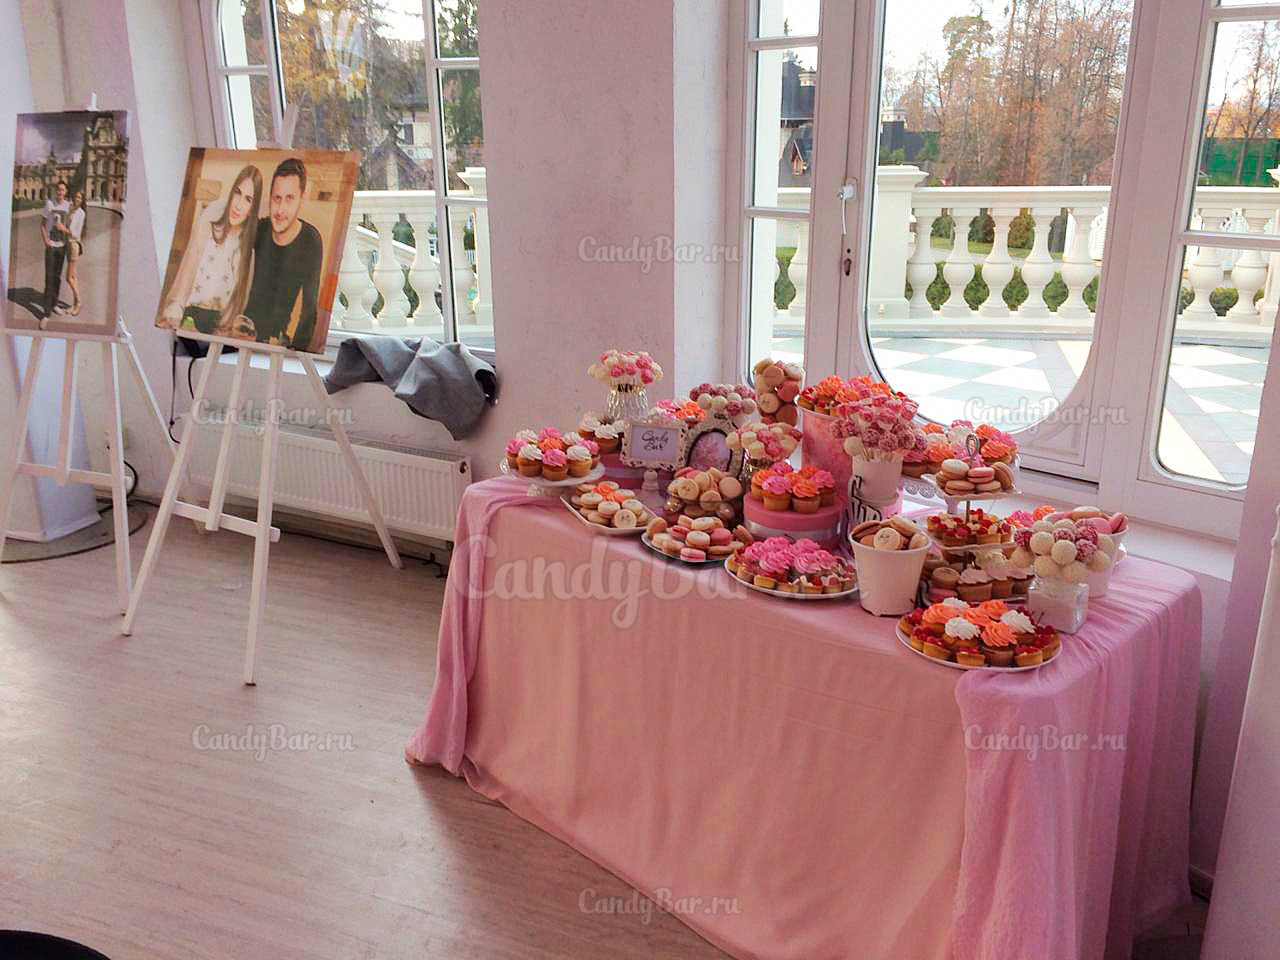 Свадебный кэнди бар в розовом цвете